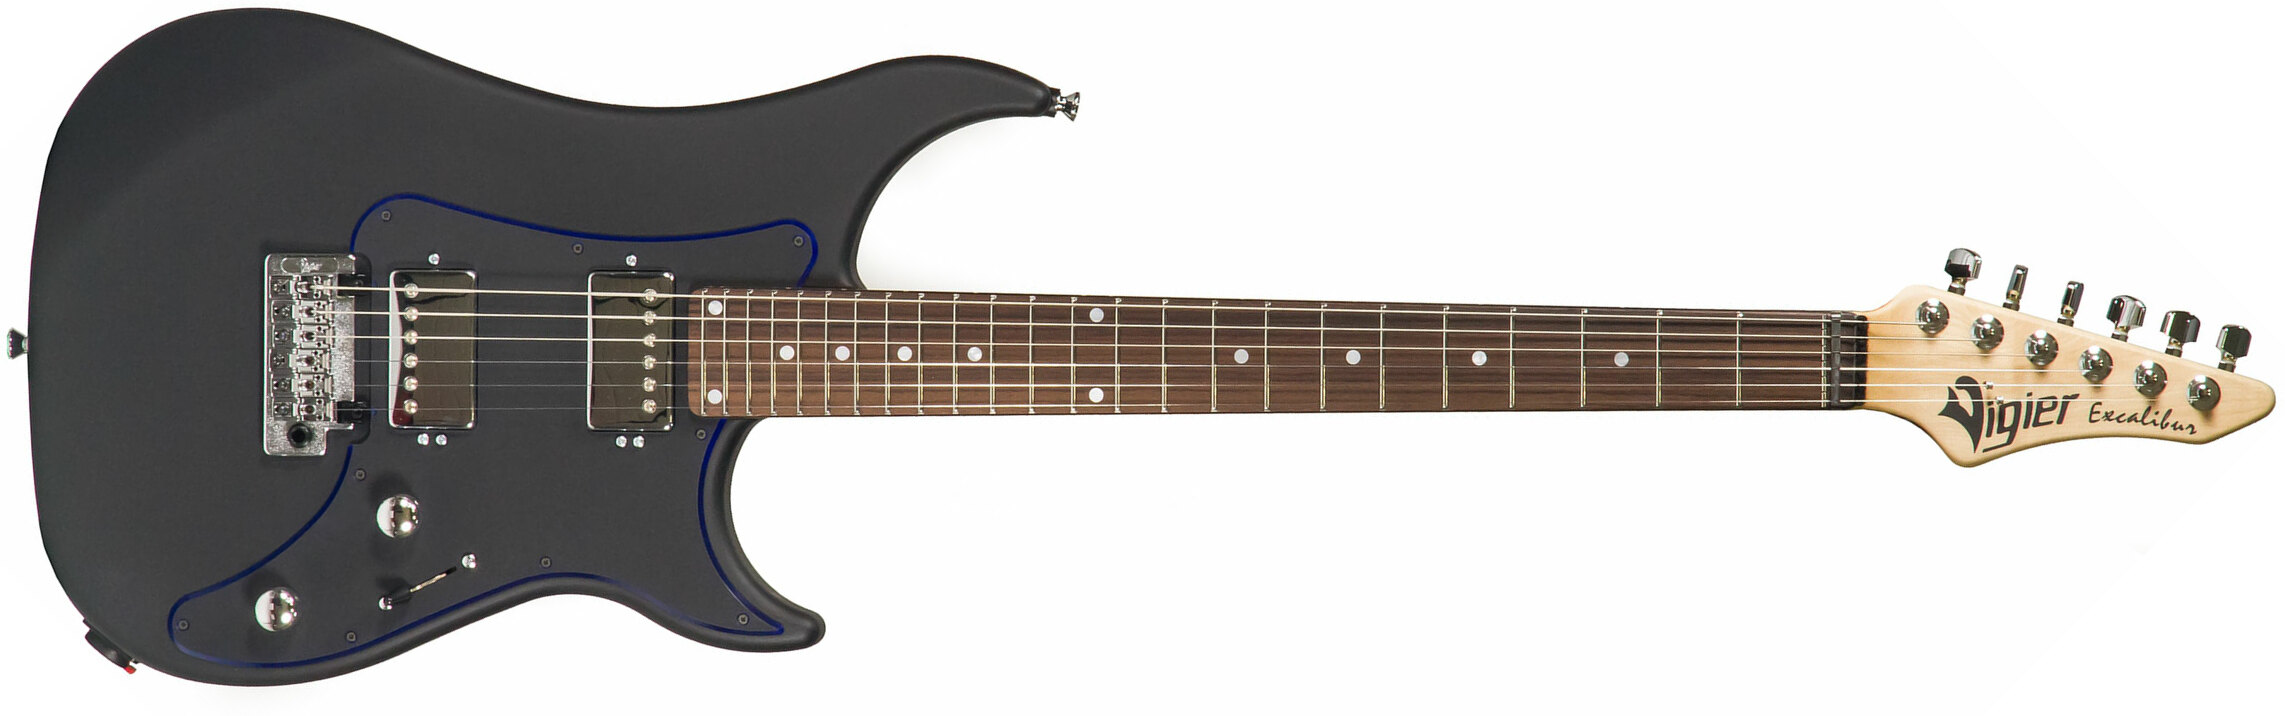 Vigier Excalibur Indus Hh Trem Rw - Textured Black - Guitarra eléctrica de doble corte. - Main picture